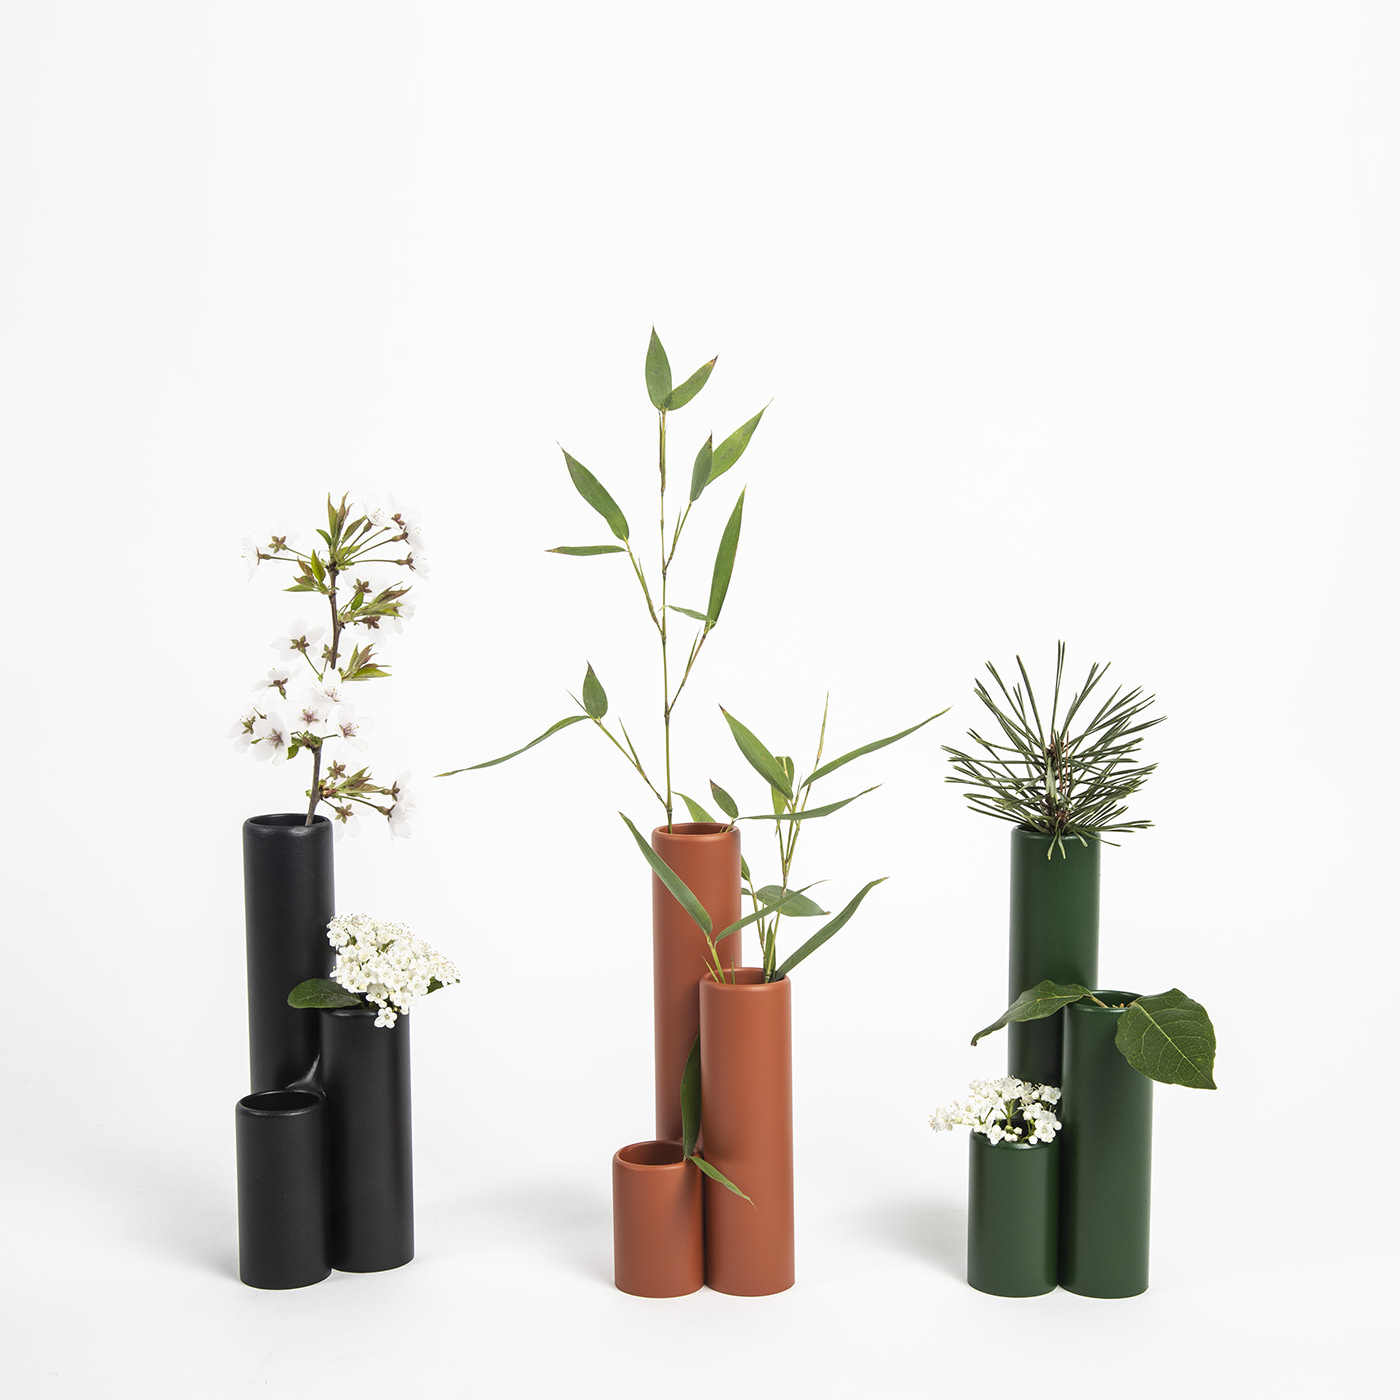 Soliflore   Vase flower ceramic design decoration minimalist product pvc natural